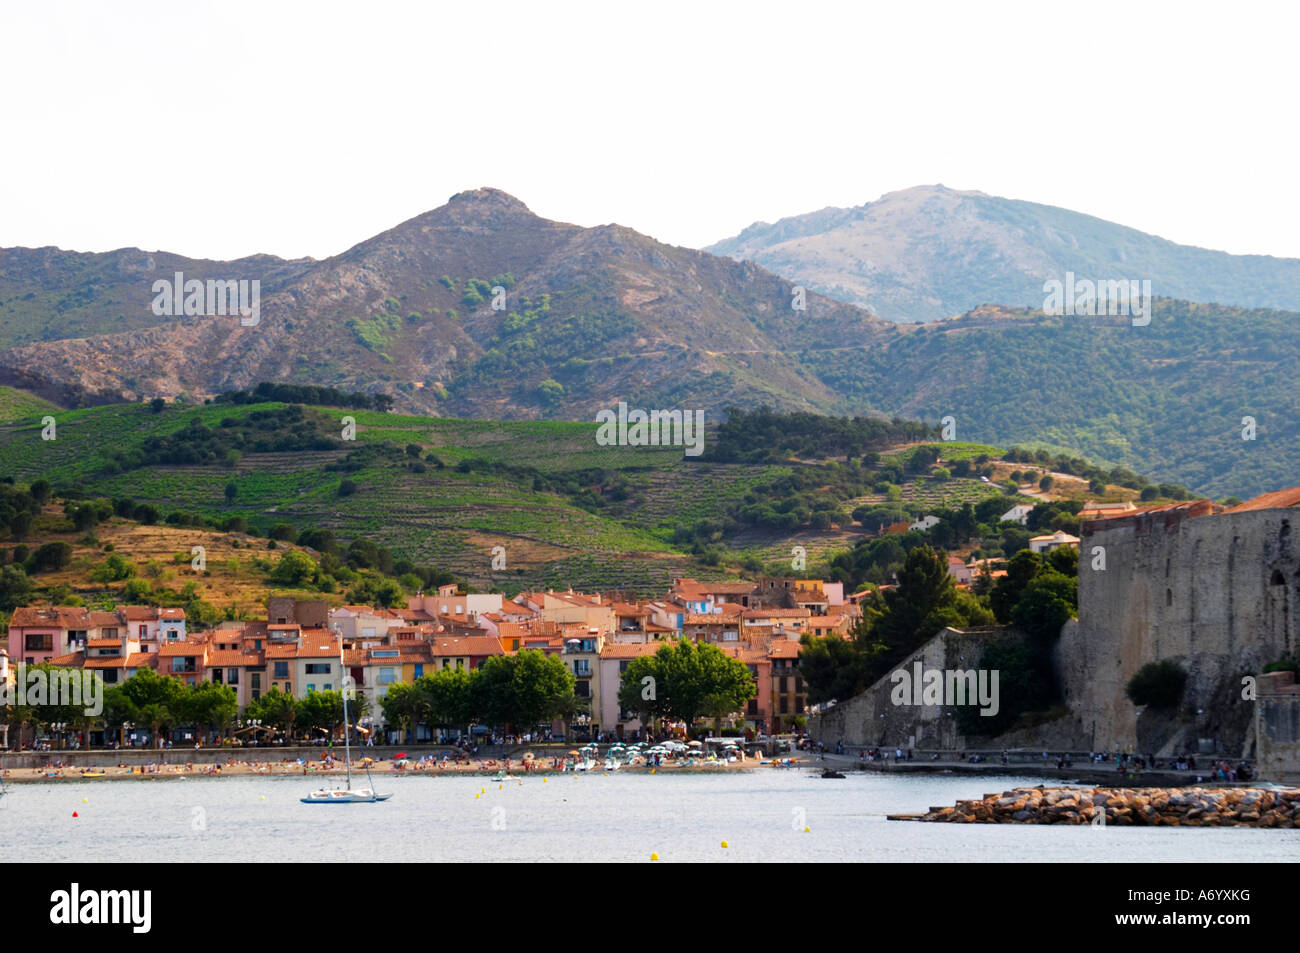 La plage dans le village. Le château de Collioure port. Collioure. Roussillon. La France. L'Europe. Montagnes en arrière-plan. Banque D'Images